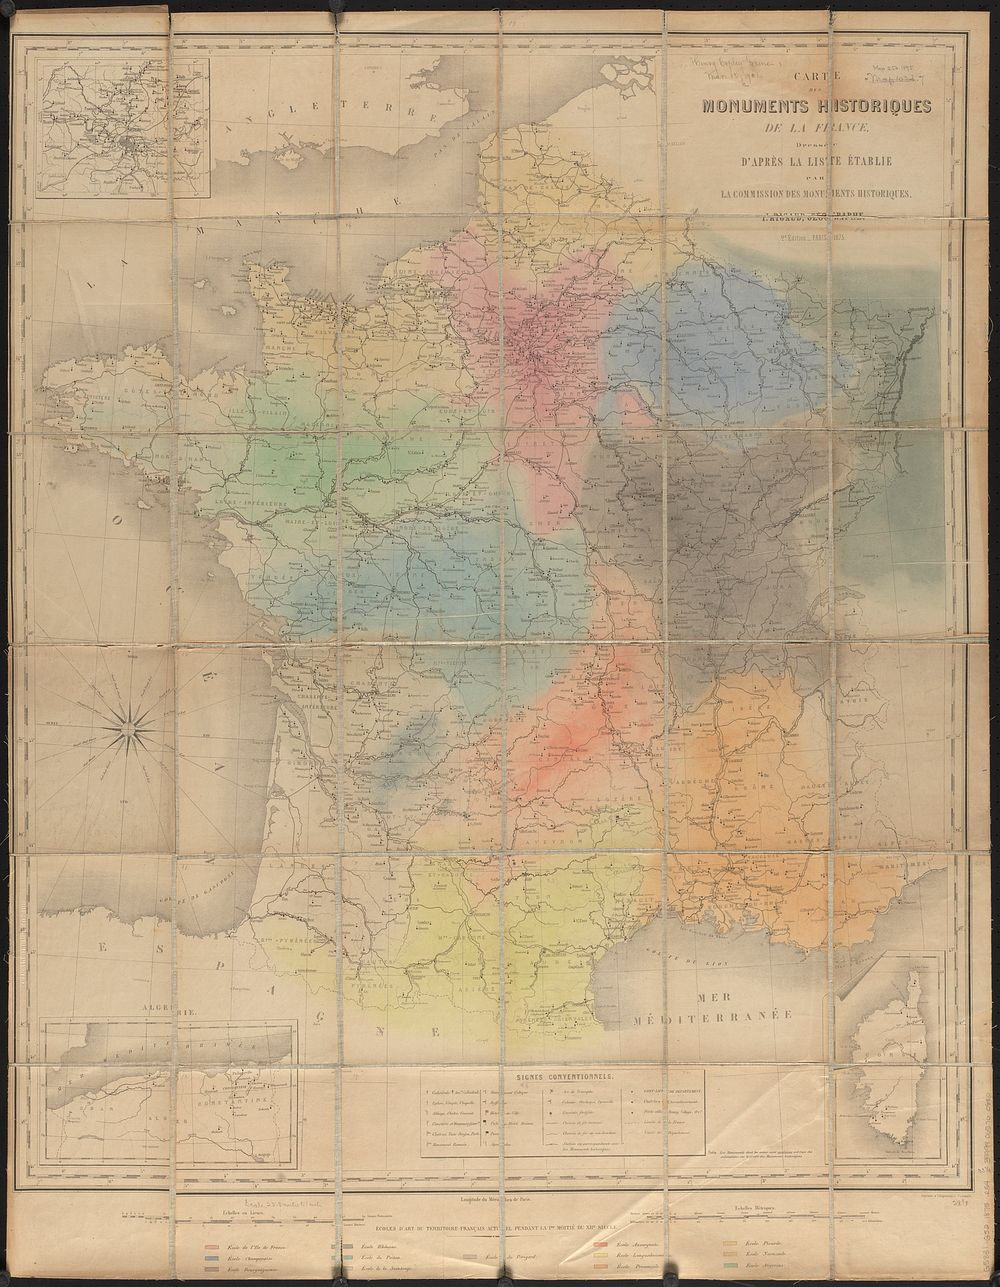             Carte des monuments historiques de la France, dressée d'après la liste établie par la Commission des…